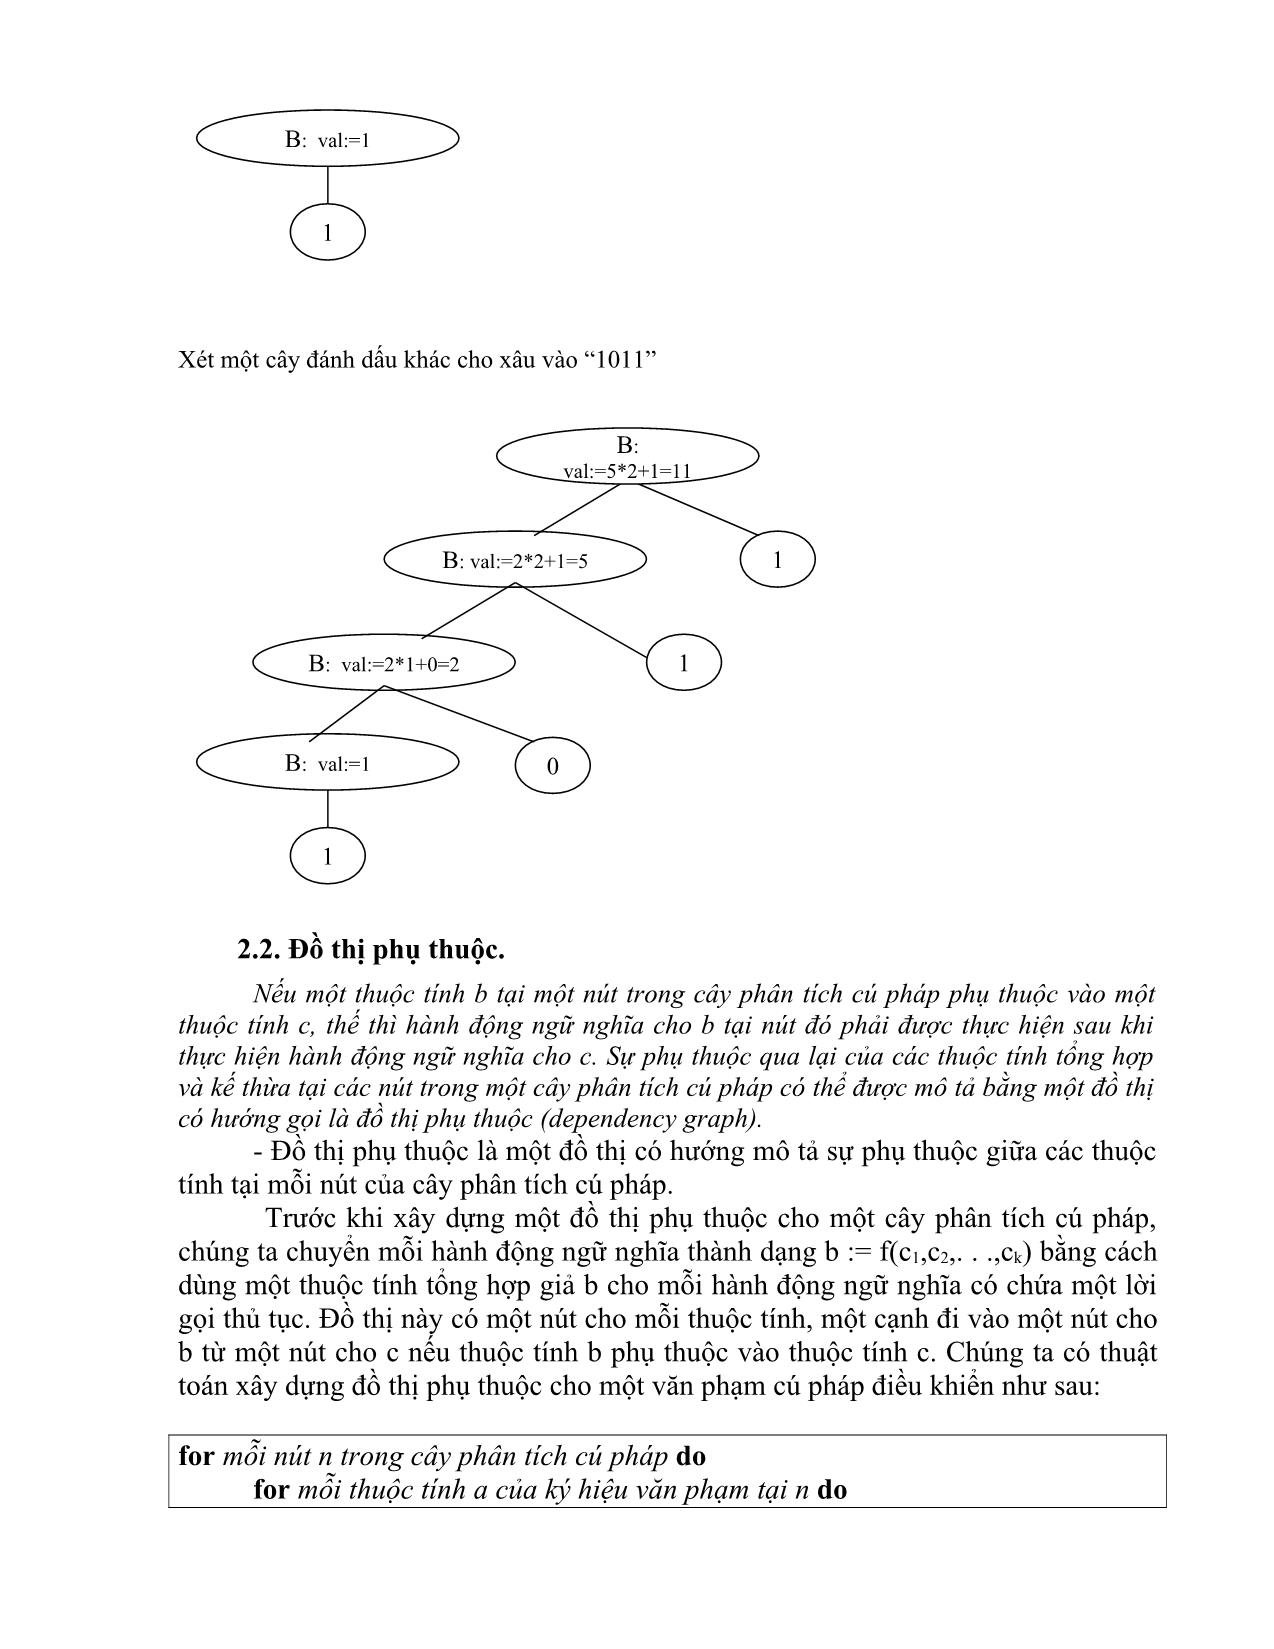 Giáo trình môn Chương trình dịch (Phần 2) trang 5